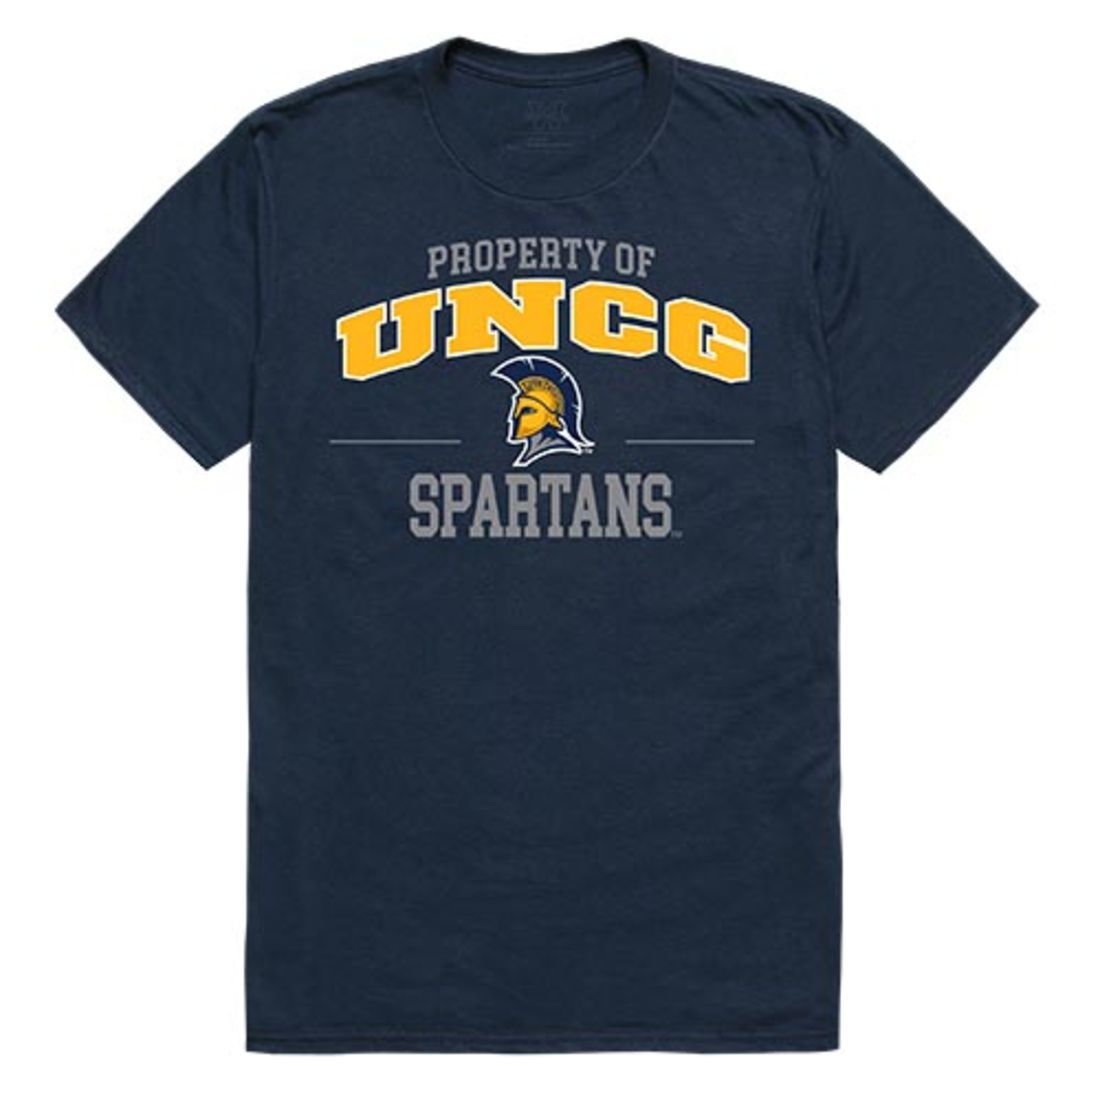 UNCG University of North Carolina at Greensboro Spartans Property T-Shirt Navy-Campus-Wardrobe